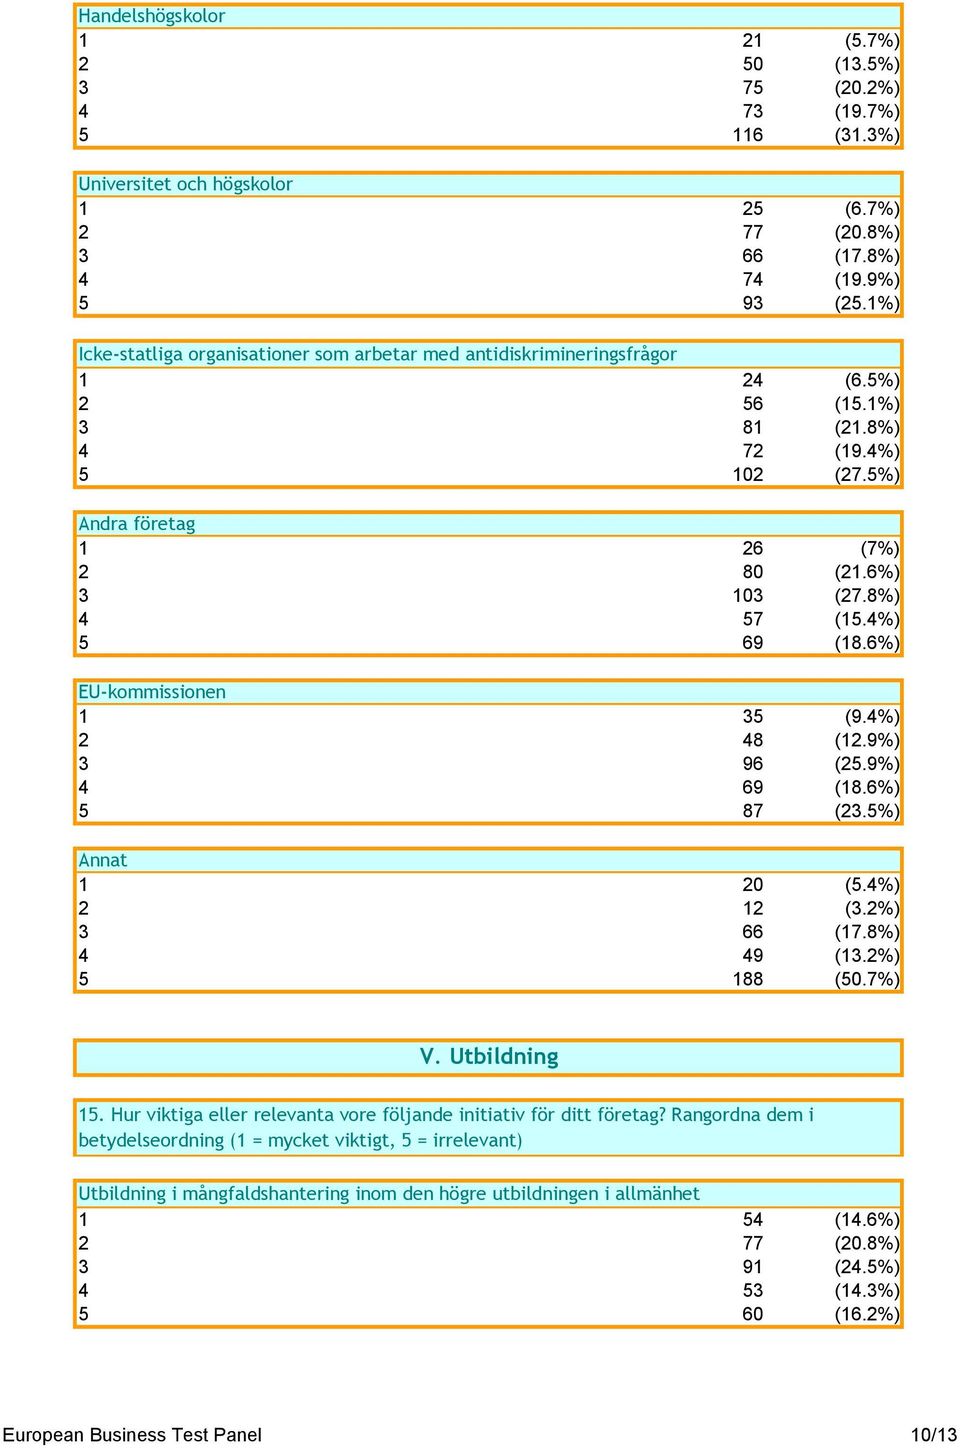 4%) 5 69 (18.6%) EU-kommissionen 1 35 (9.4%) 2 48 (12.9%) 3 96 (25.9%) 4 69 (18.6%) 5 87 (23.5%) Annat 1 20 (5.4%) 2 12 (3.2%) 3 66 (17.8%) 4 49 (13.2%) 5 188 (50.7%) V. Utbildning 15.